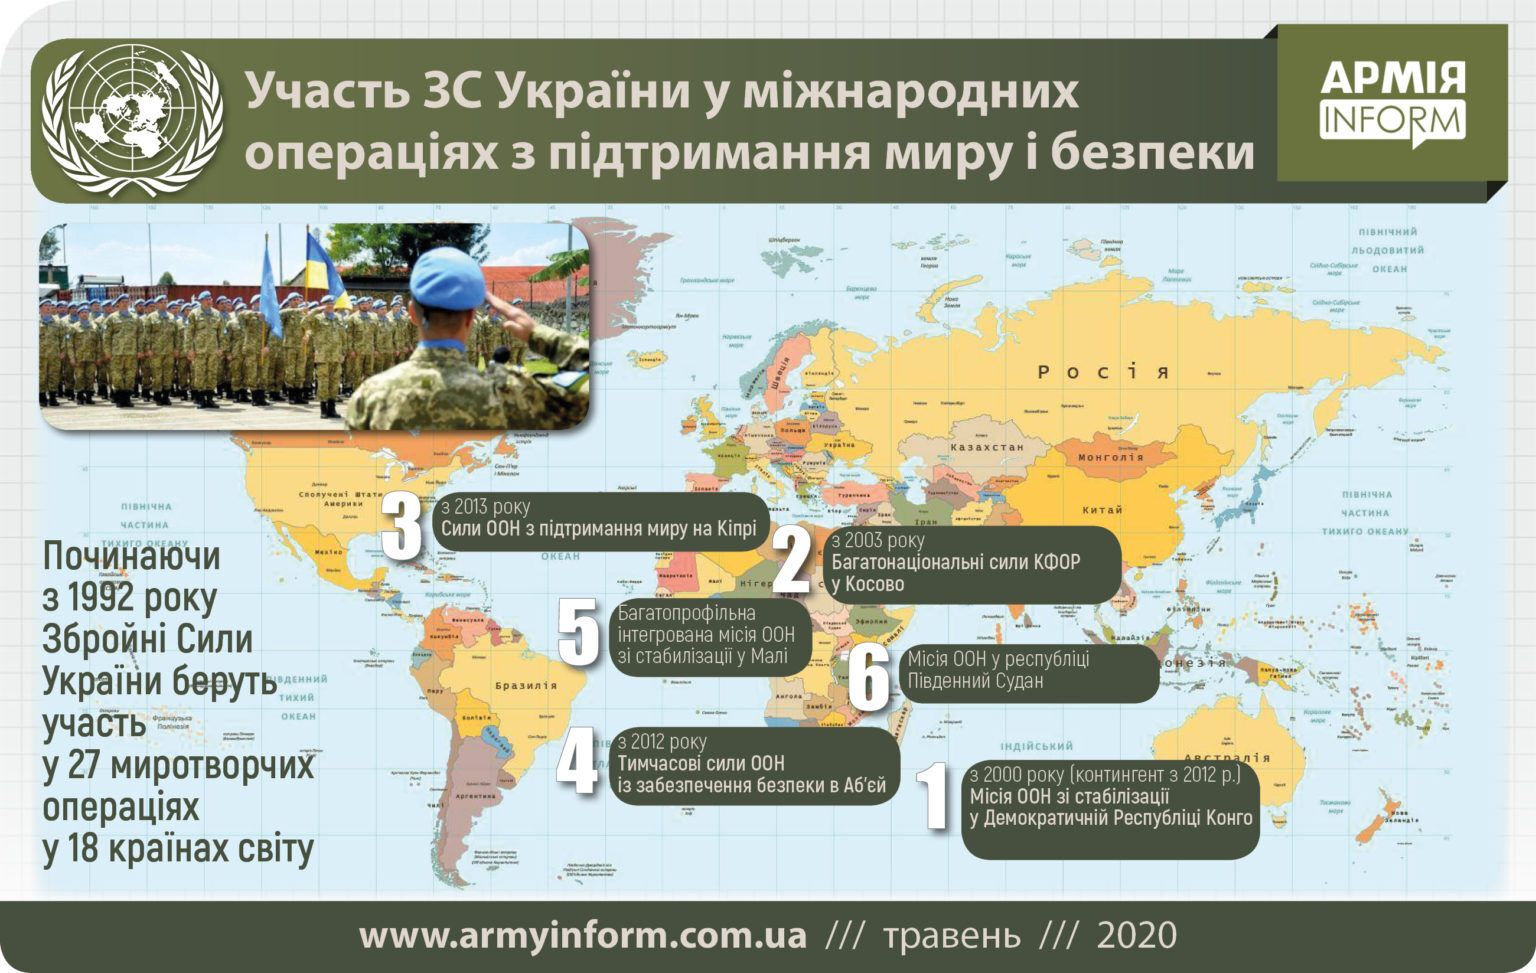 Участие украинских военных в миротвочреских миссиях